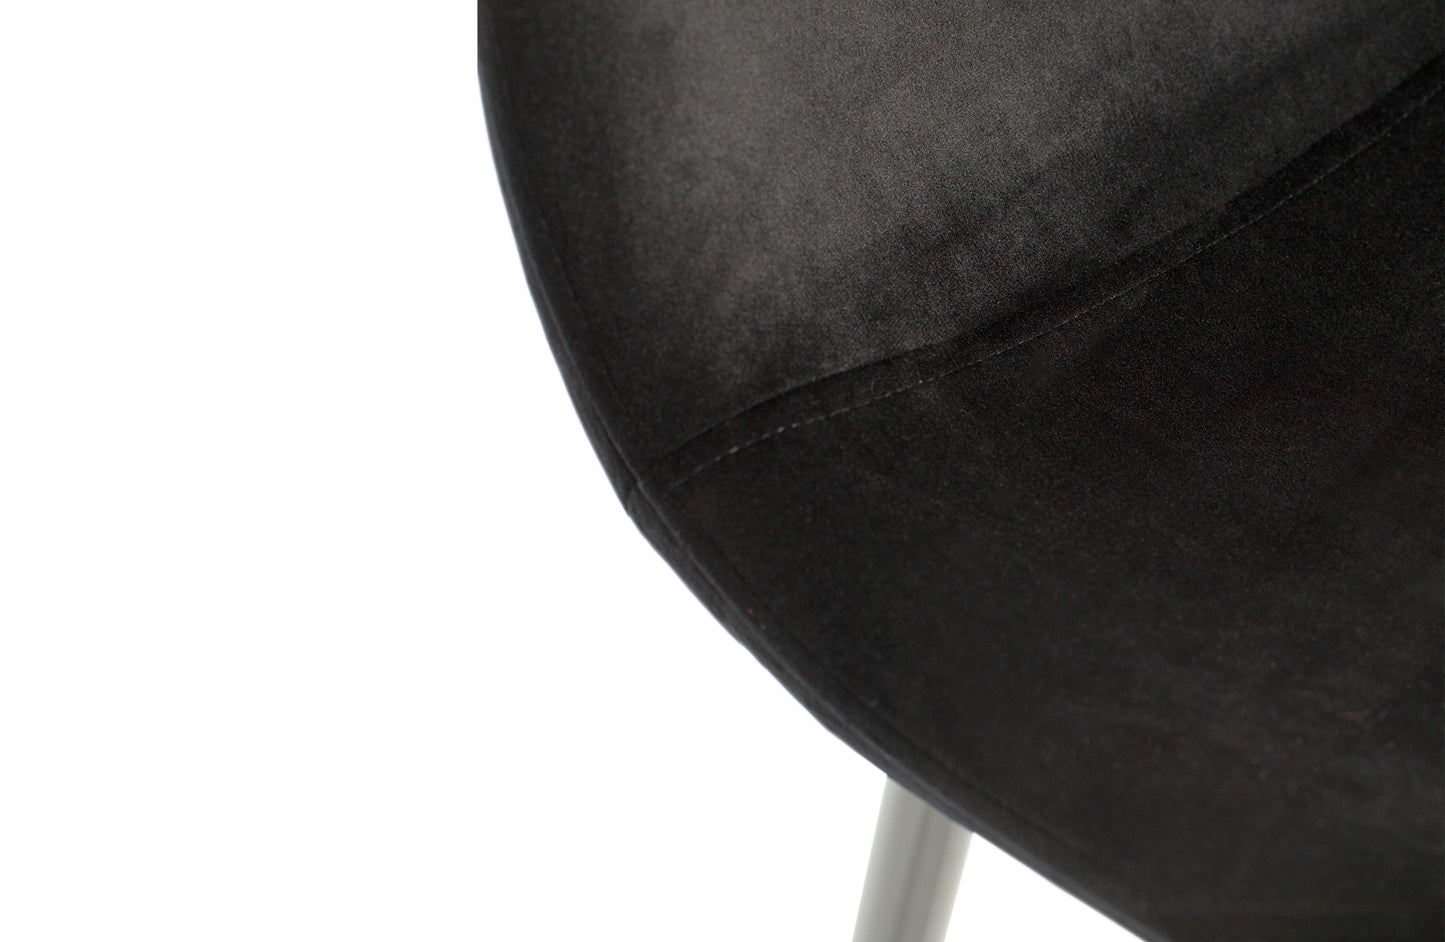 Set Of 2 - Marije Dining Chair Velvet Black